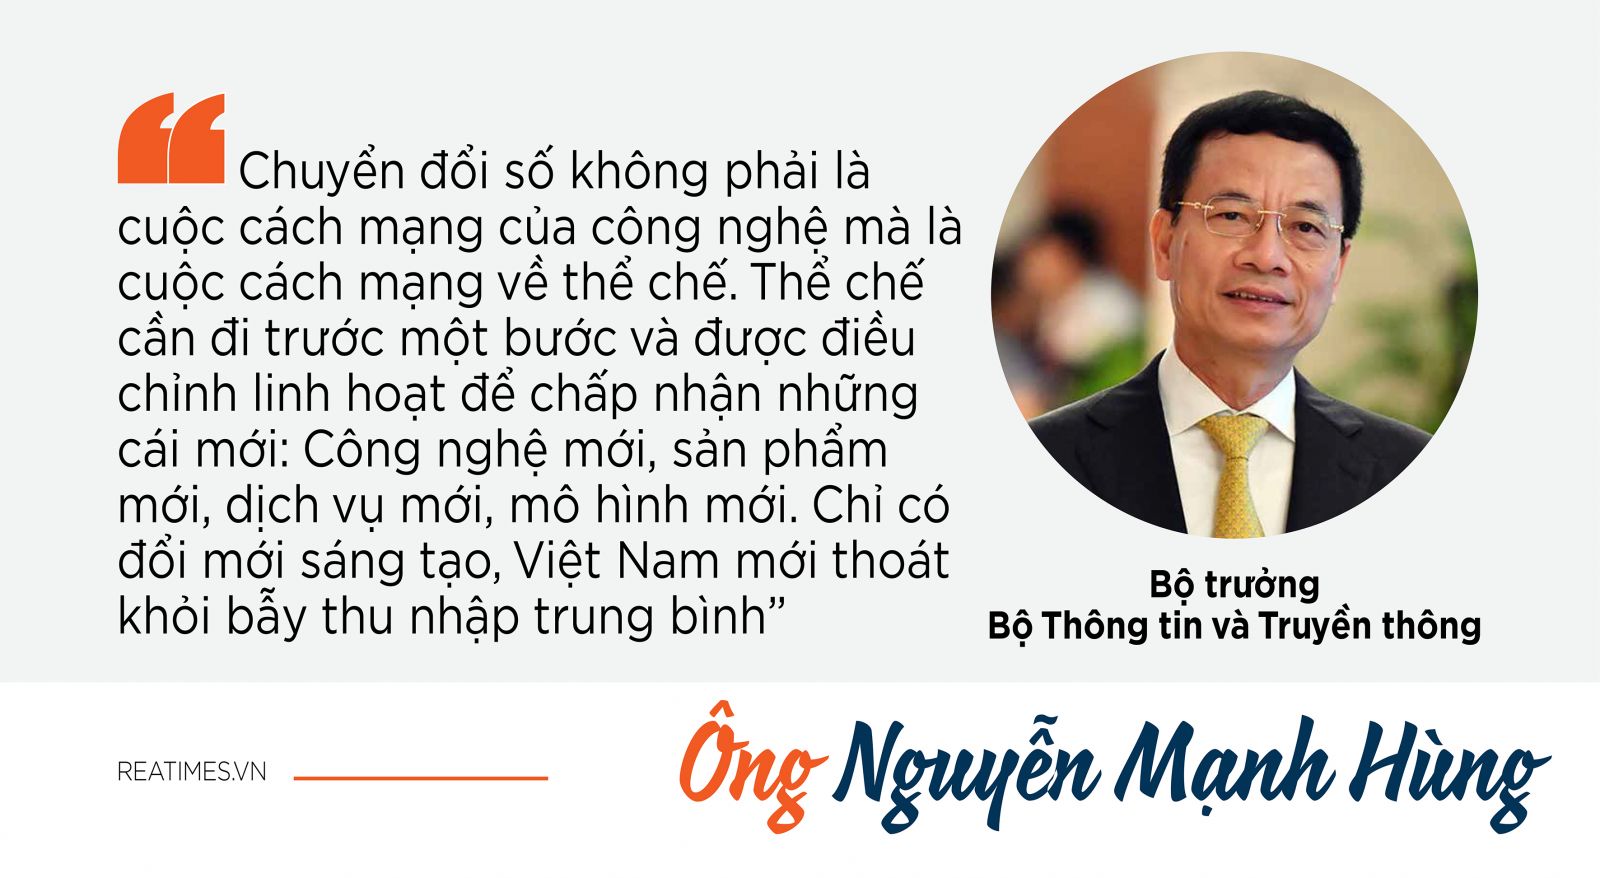 Ông Nguyễn Mạnh Hùng nói về chuyển đổi số